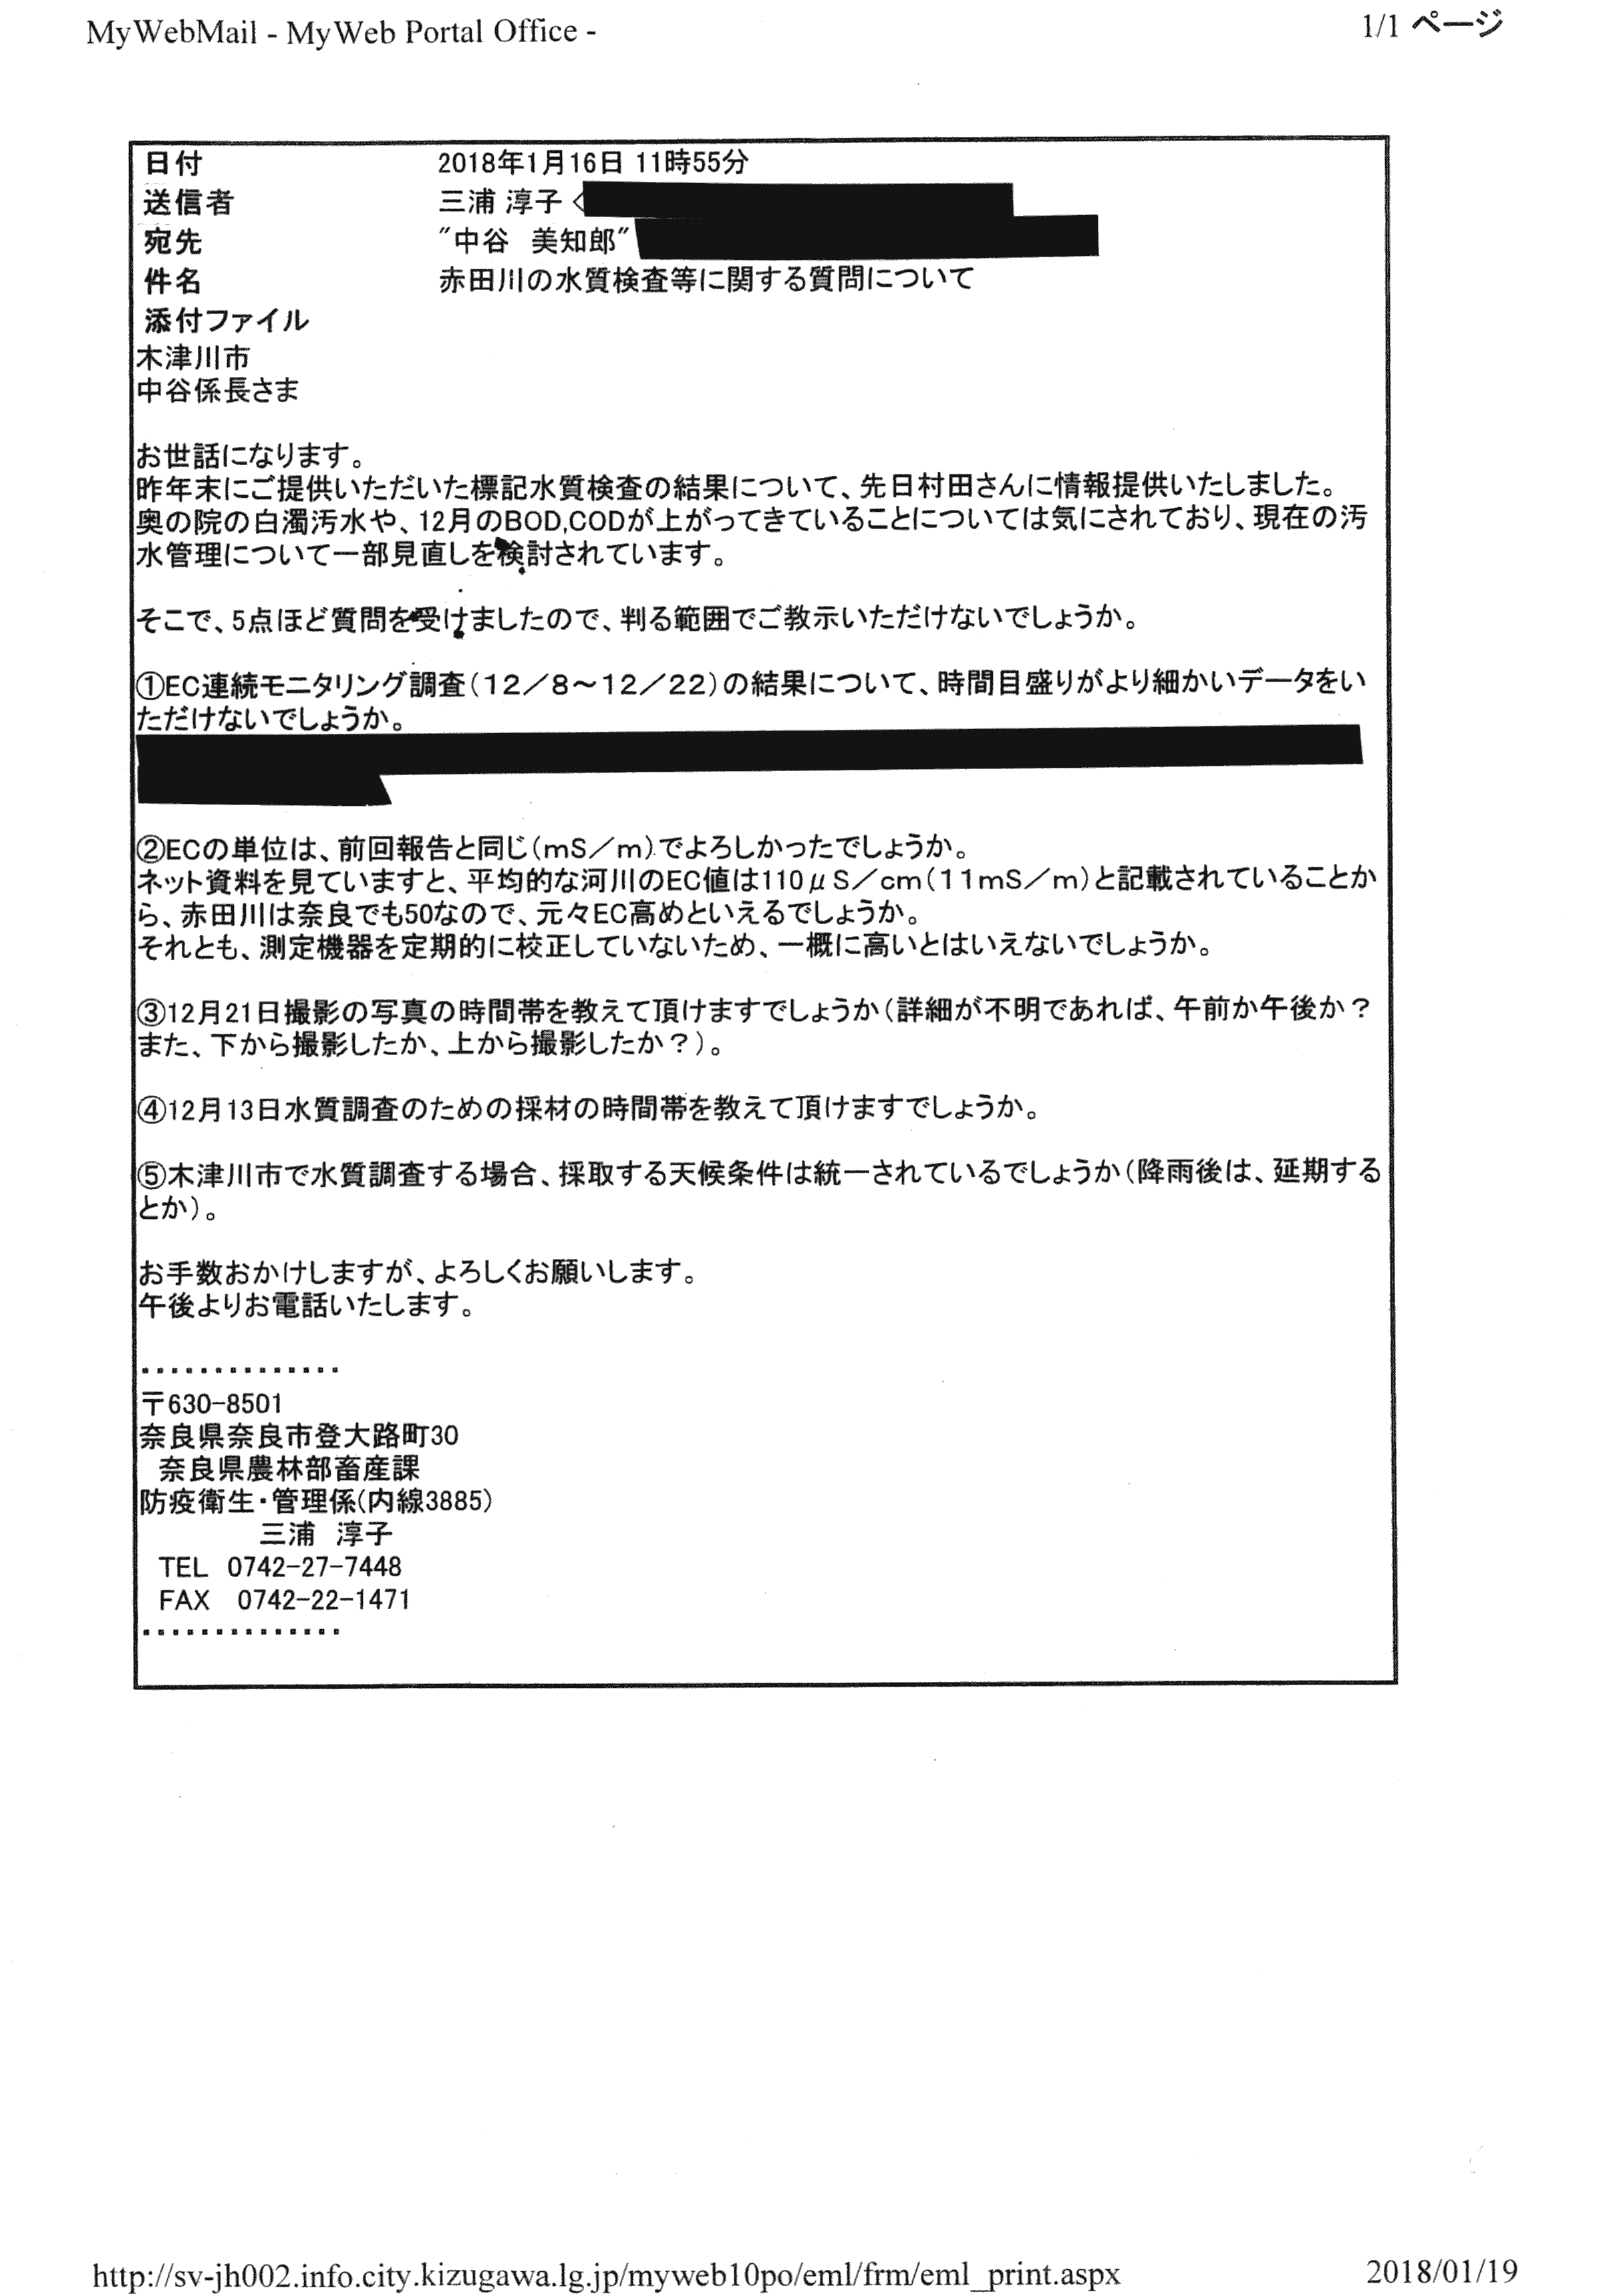 平成30年1月23日-赤田川水質調査関係資料の提供について-03